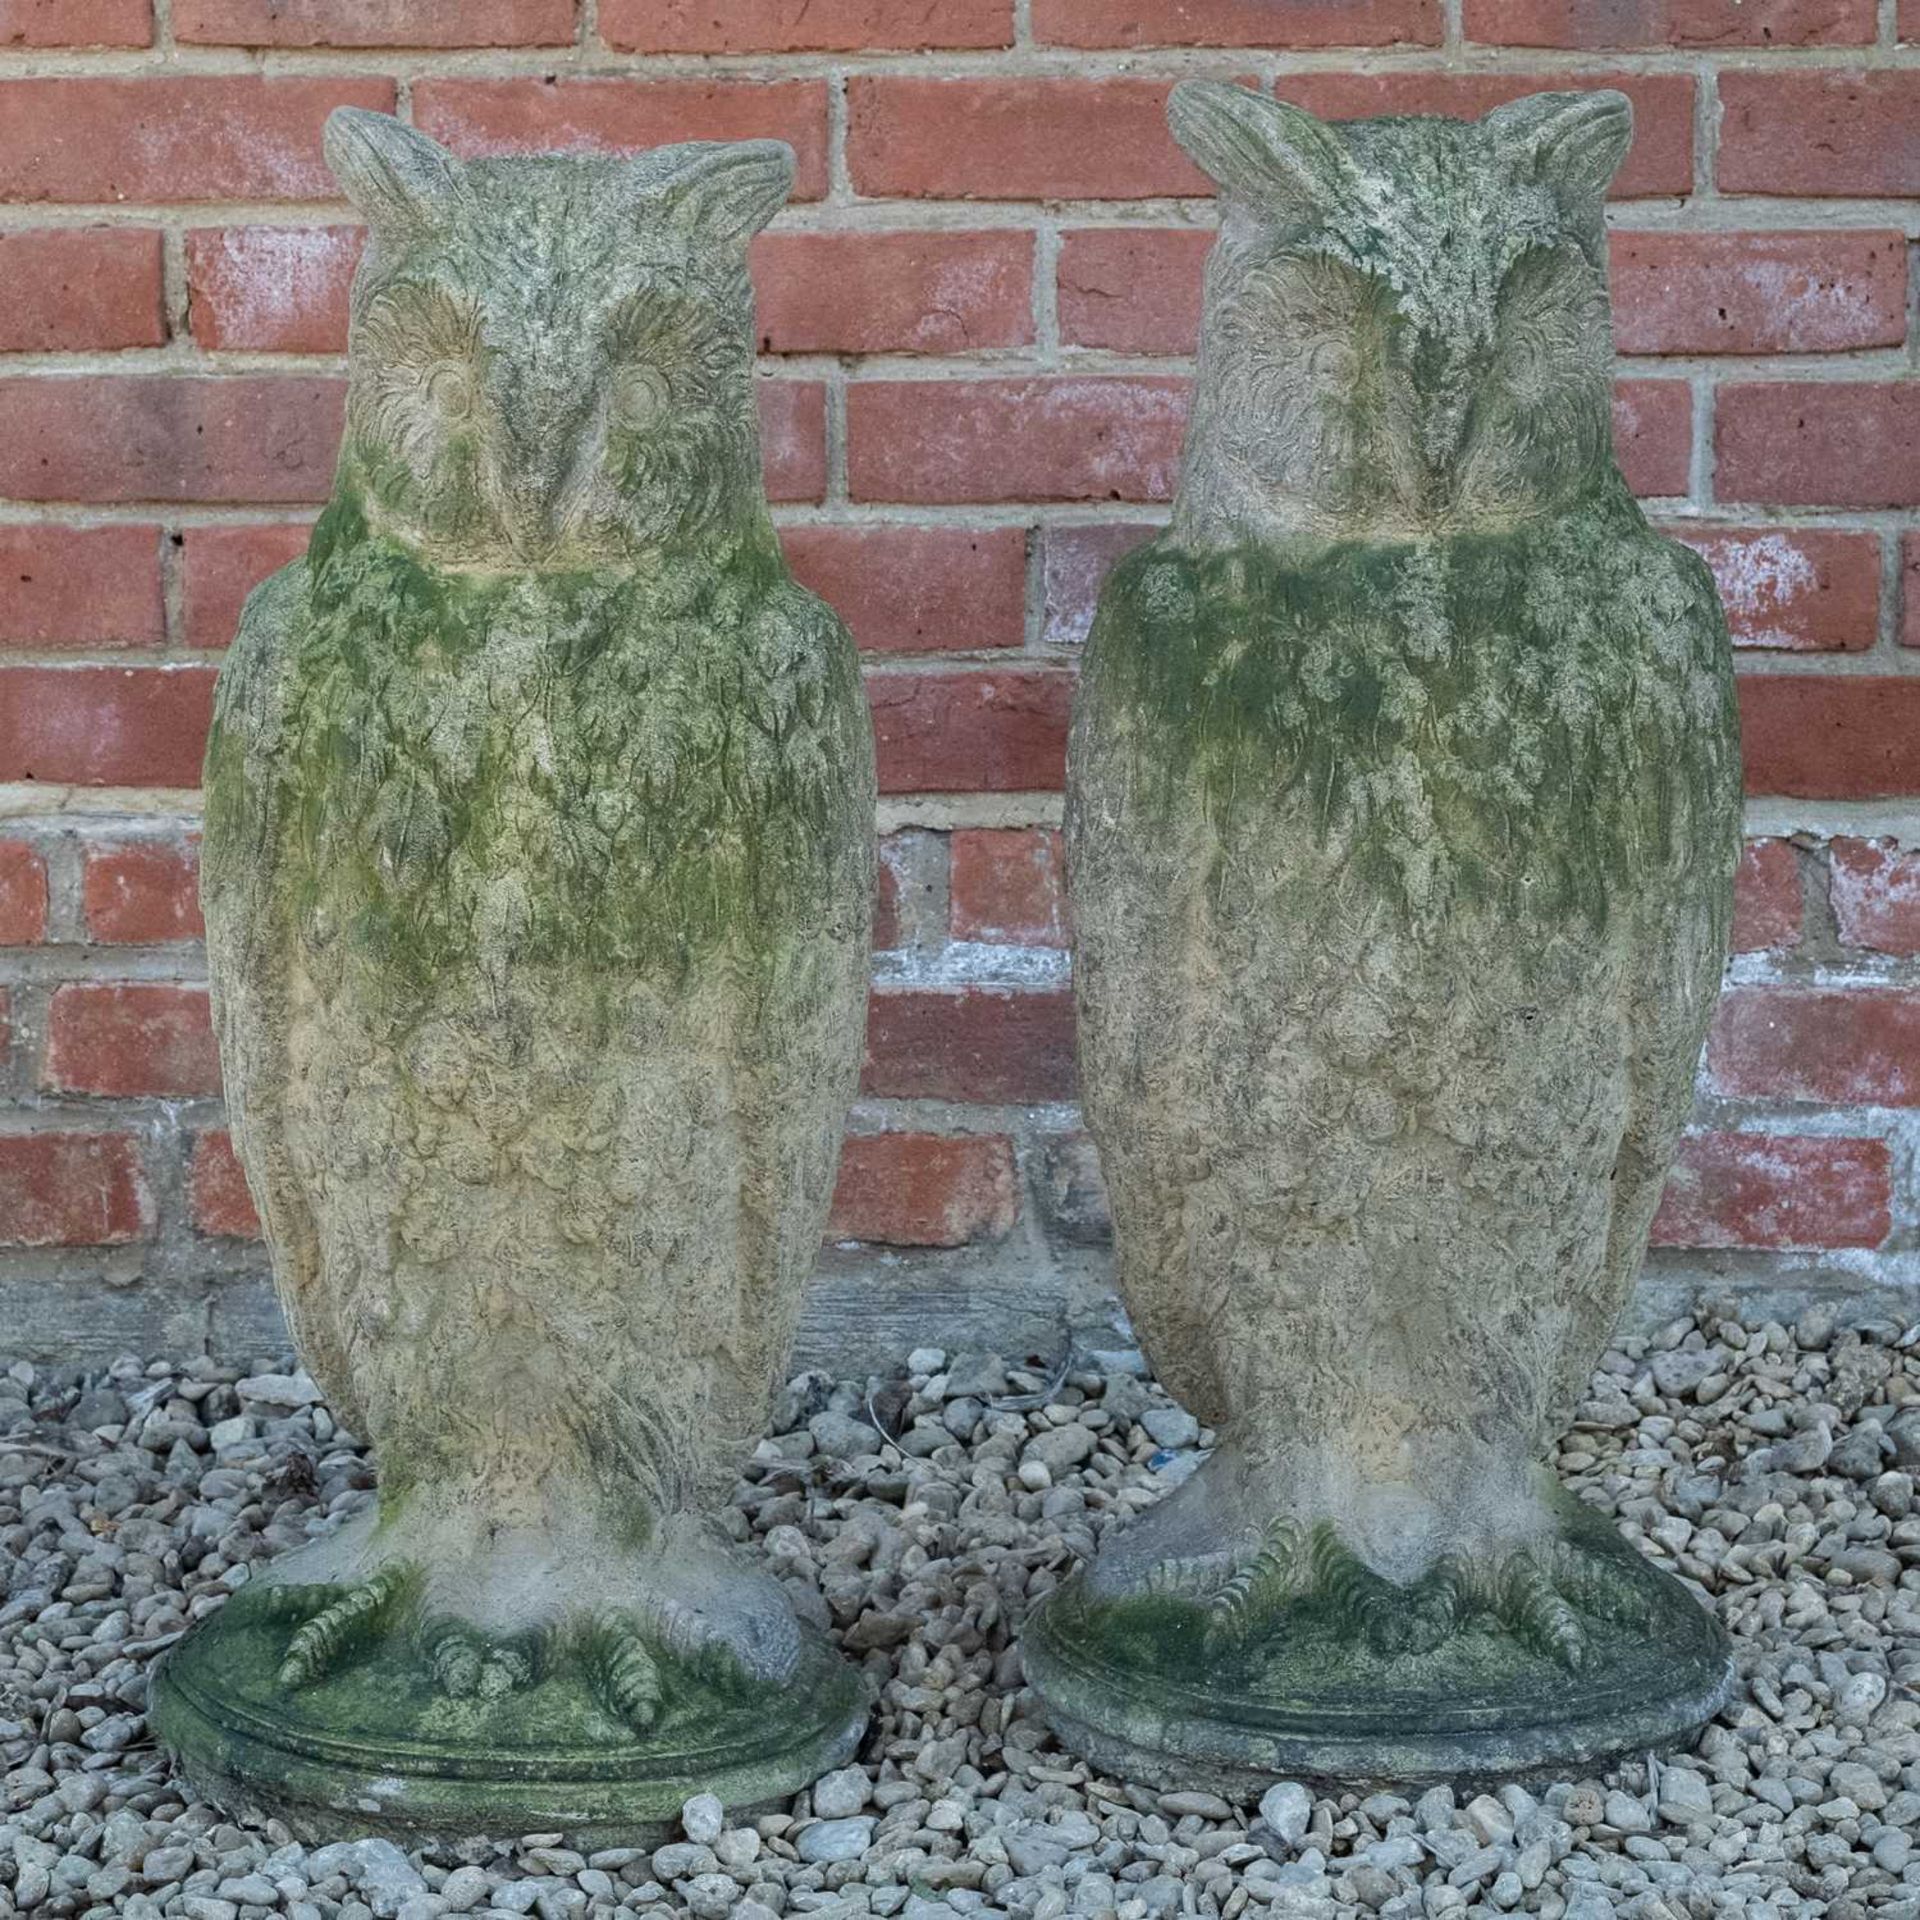 A pair of antique reconstituted stone owl sculptures